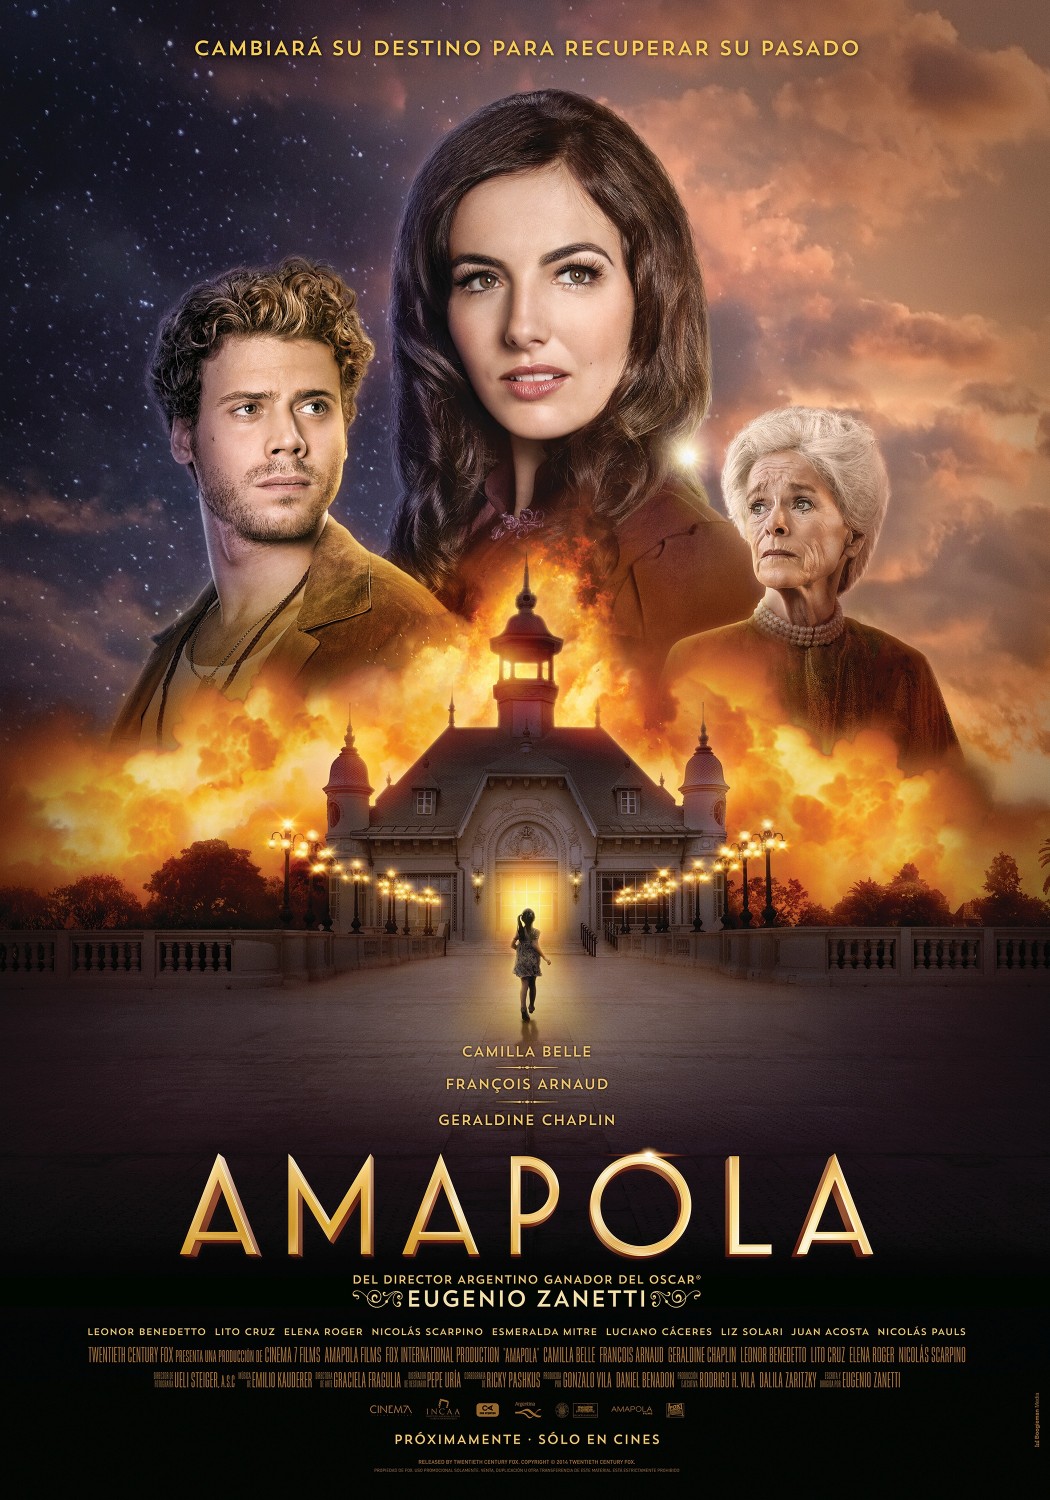 Extra Large Movie Poster Image for Amapola 